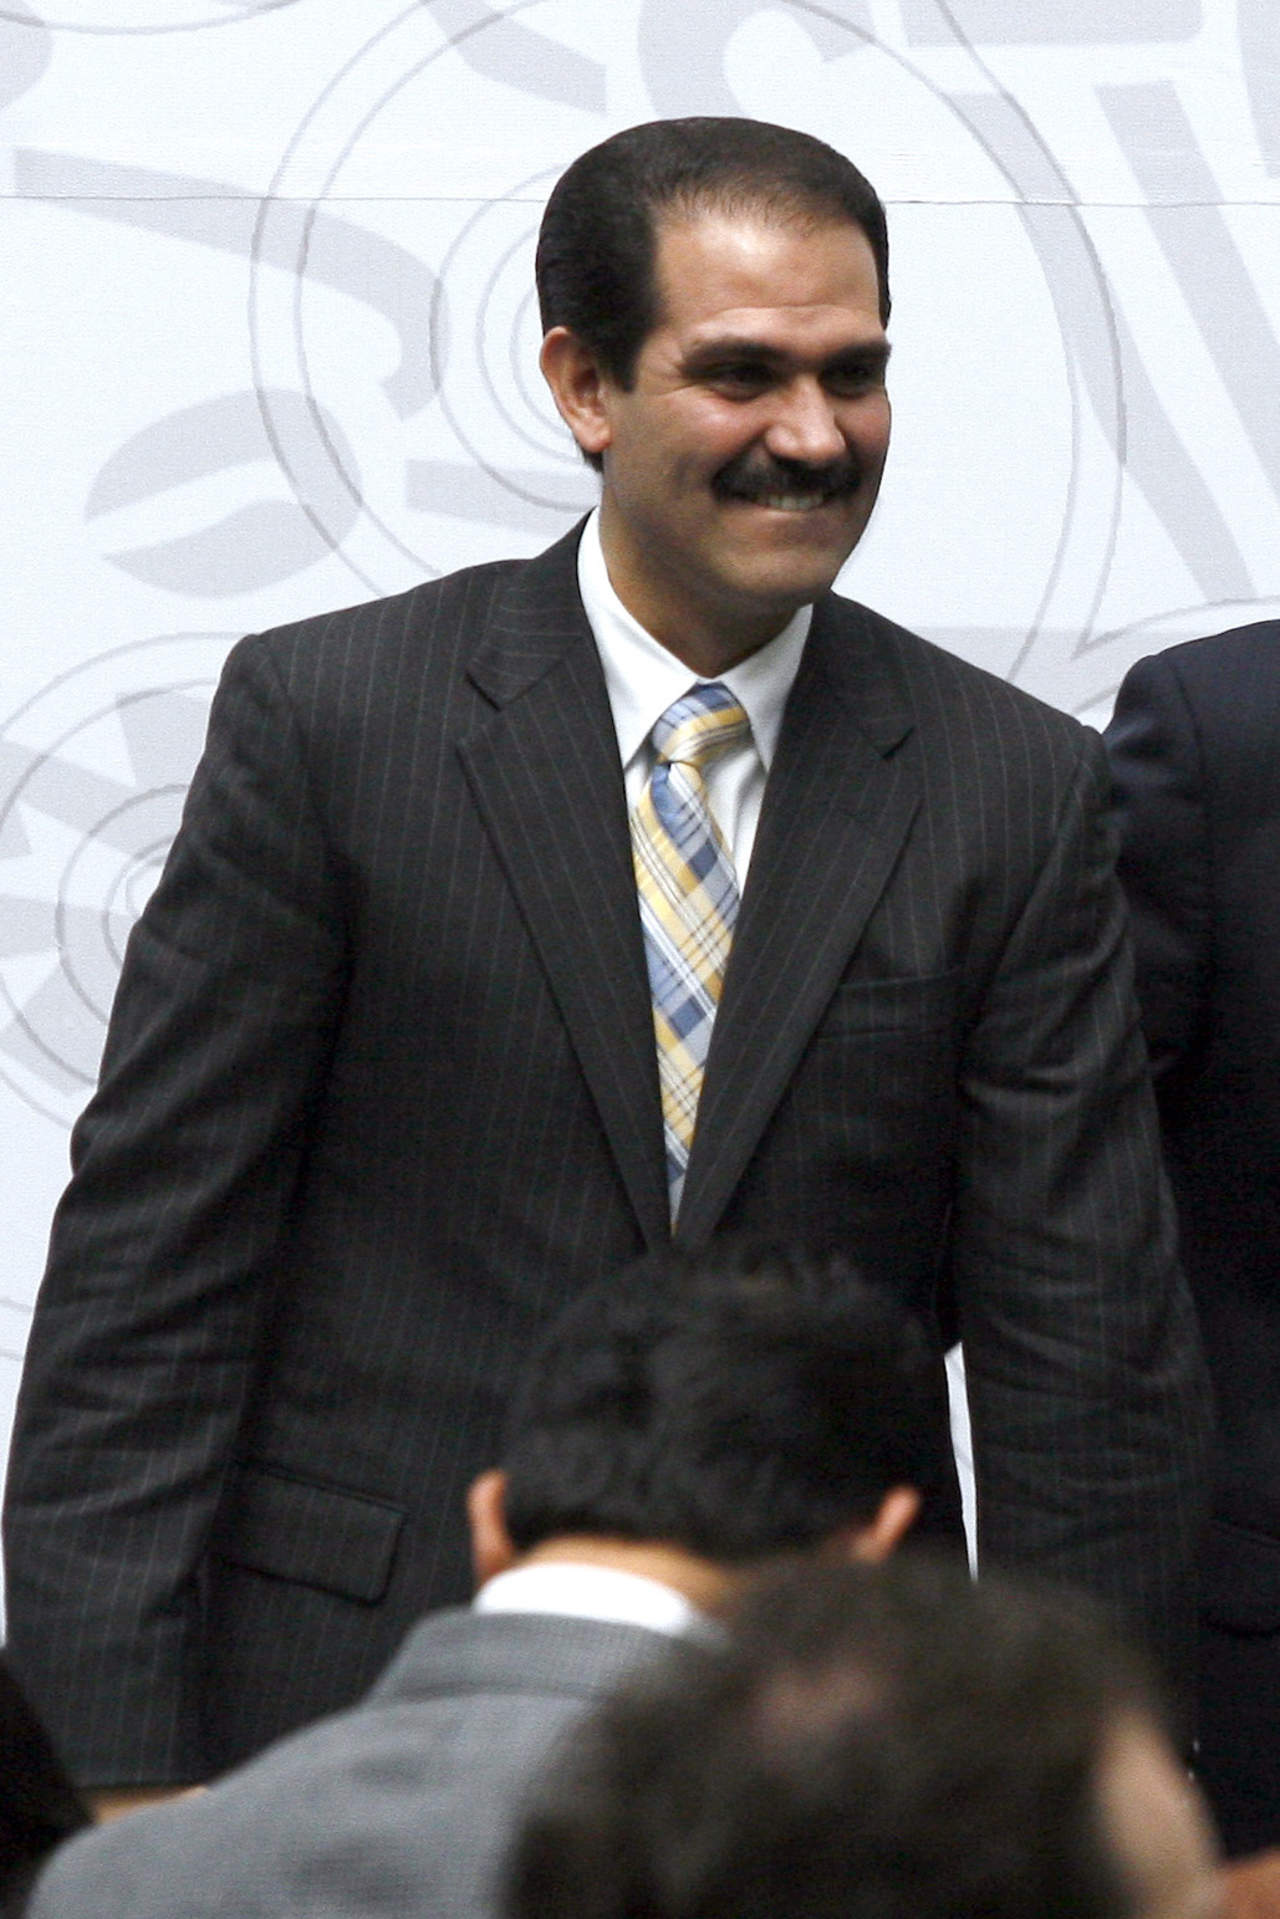 El exgobernador de Sonora, Guillermo Padrés Elías, podría salir libre en enero indicaron fuentes allegadas al caso. (ARCHIVO)